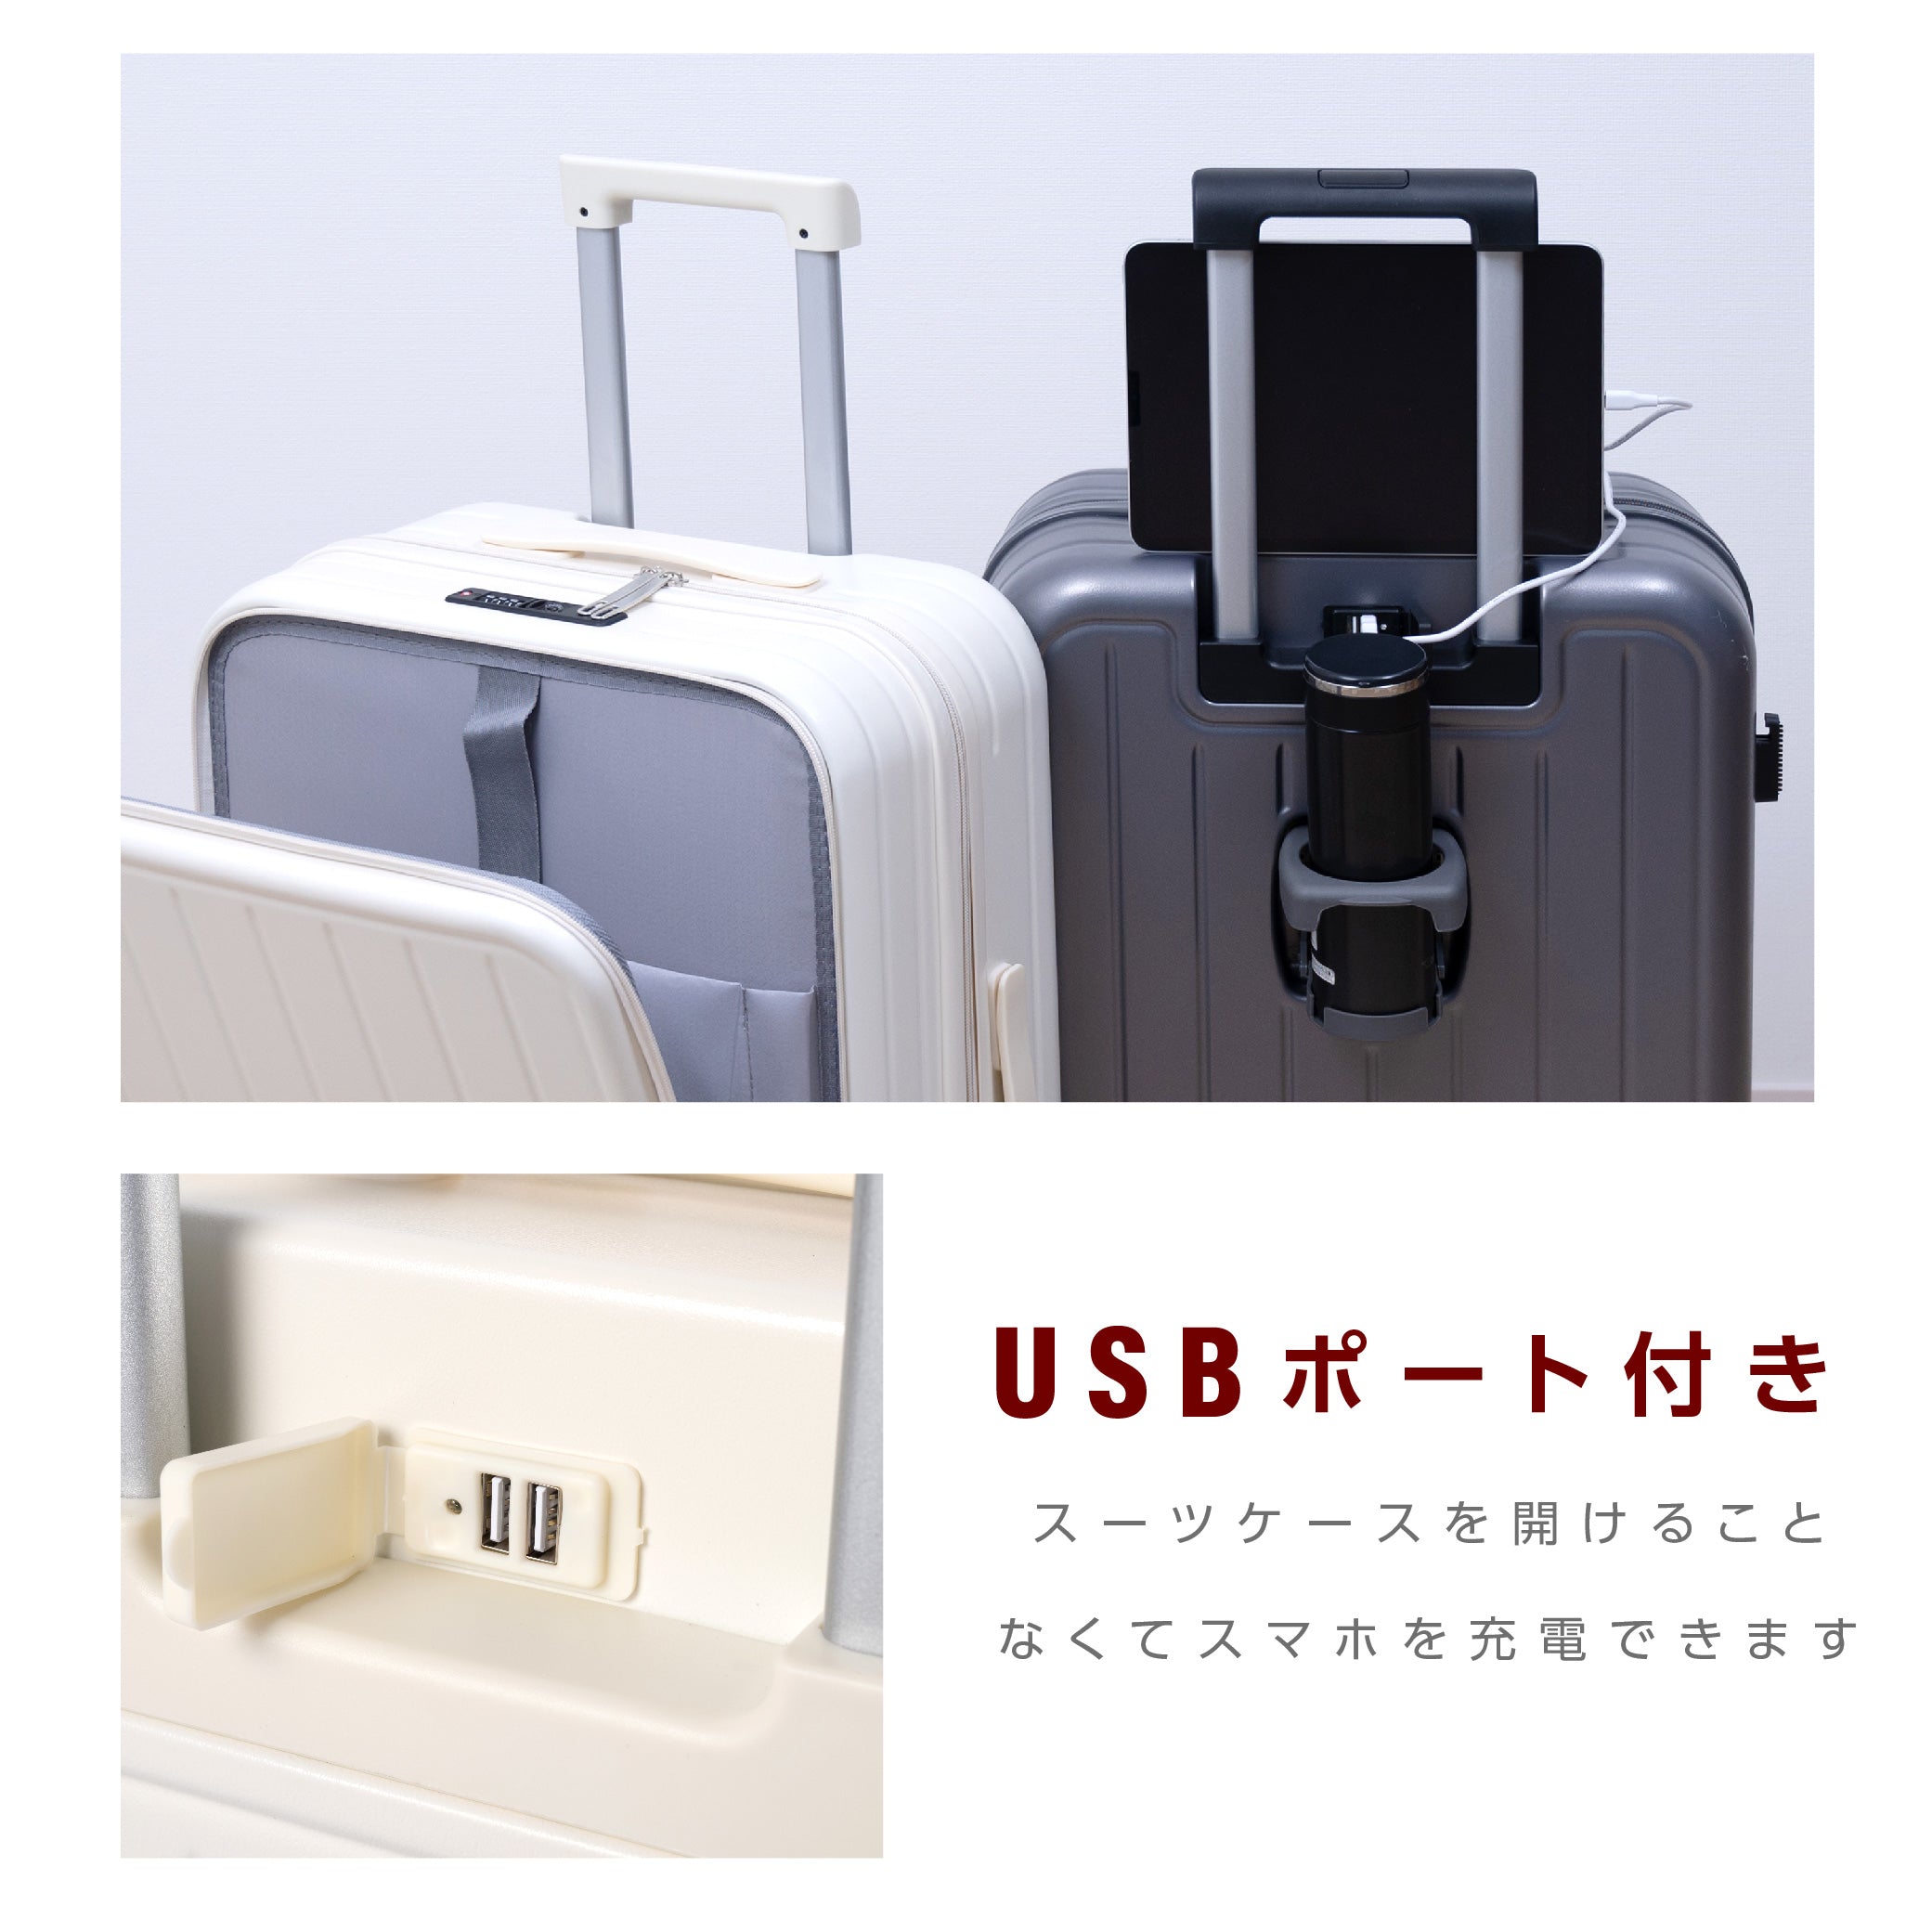 前開き スーツケース USBポート付き キャリーケース Mサイズ 大型 66L キャリーバッグ 5カラー選ぶ フロントオープン 4-7日用 泊まる カップホルダー付き 軽量設計 大容量 トランク 修学旅行 海外旅行 国内旅行 sc172-24